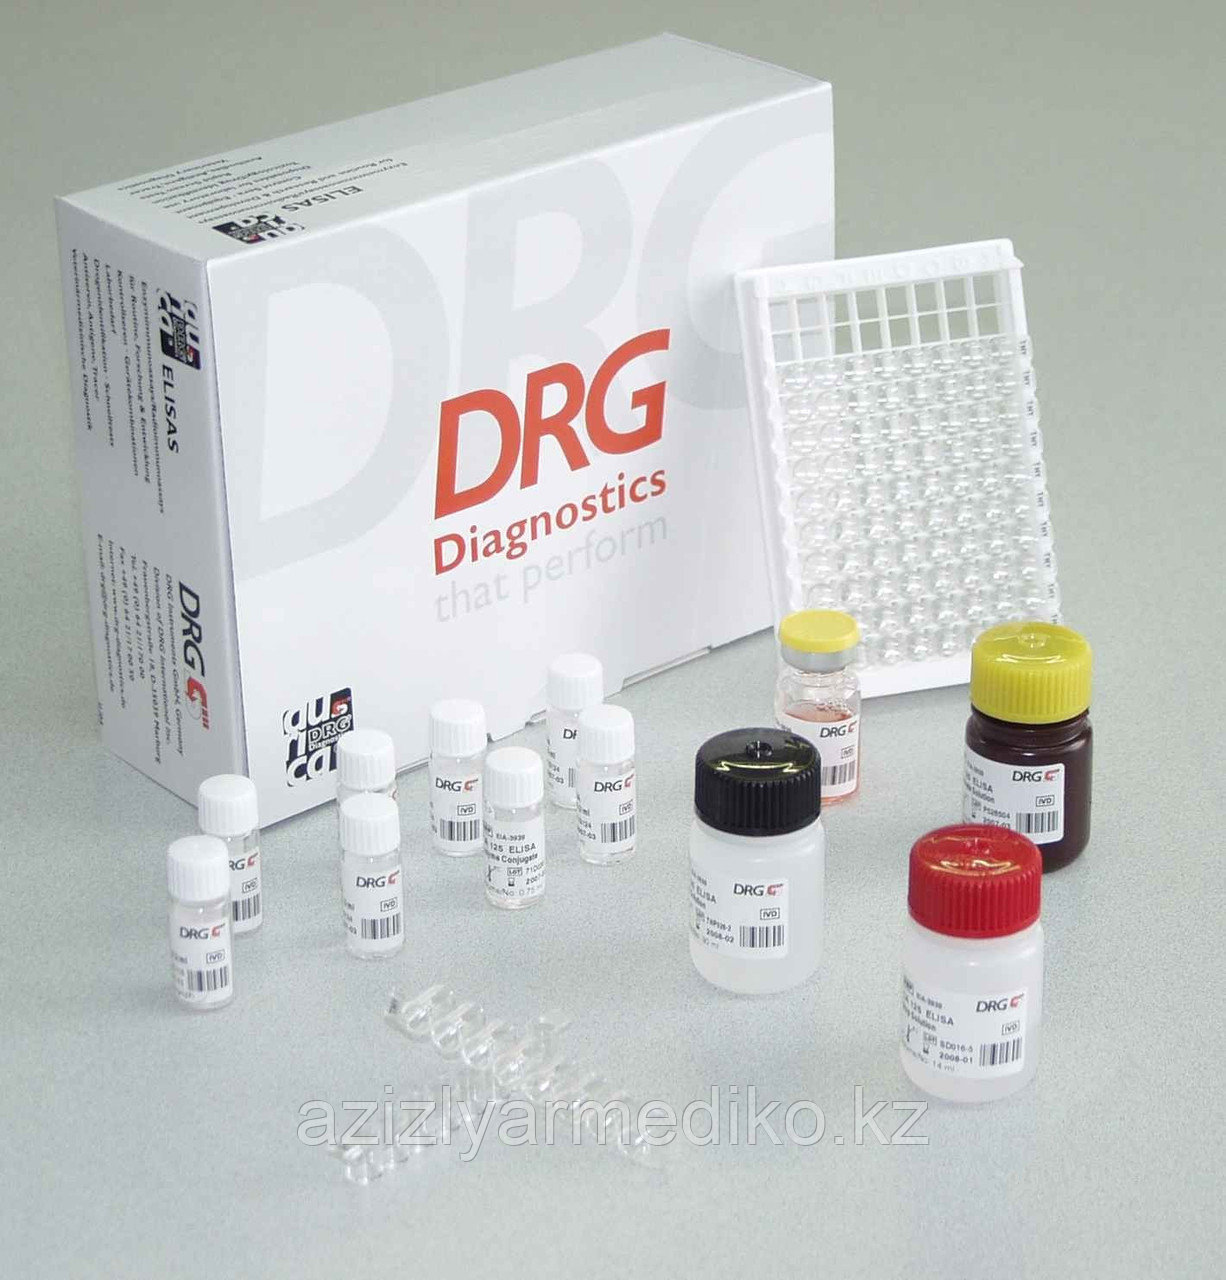 Реагенты для иммуноферментного анализа (ИФА), DRG InstrumentsGmbH